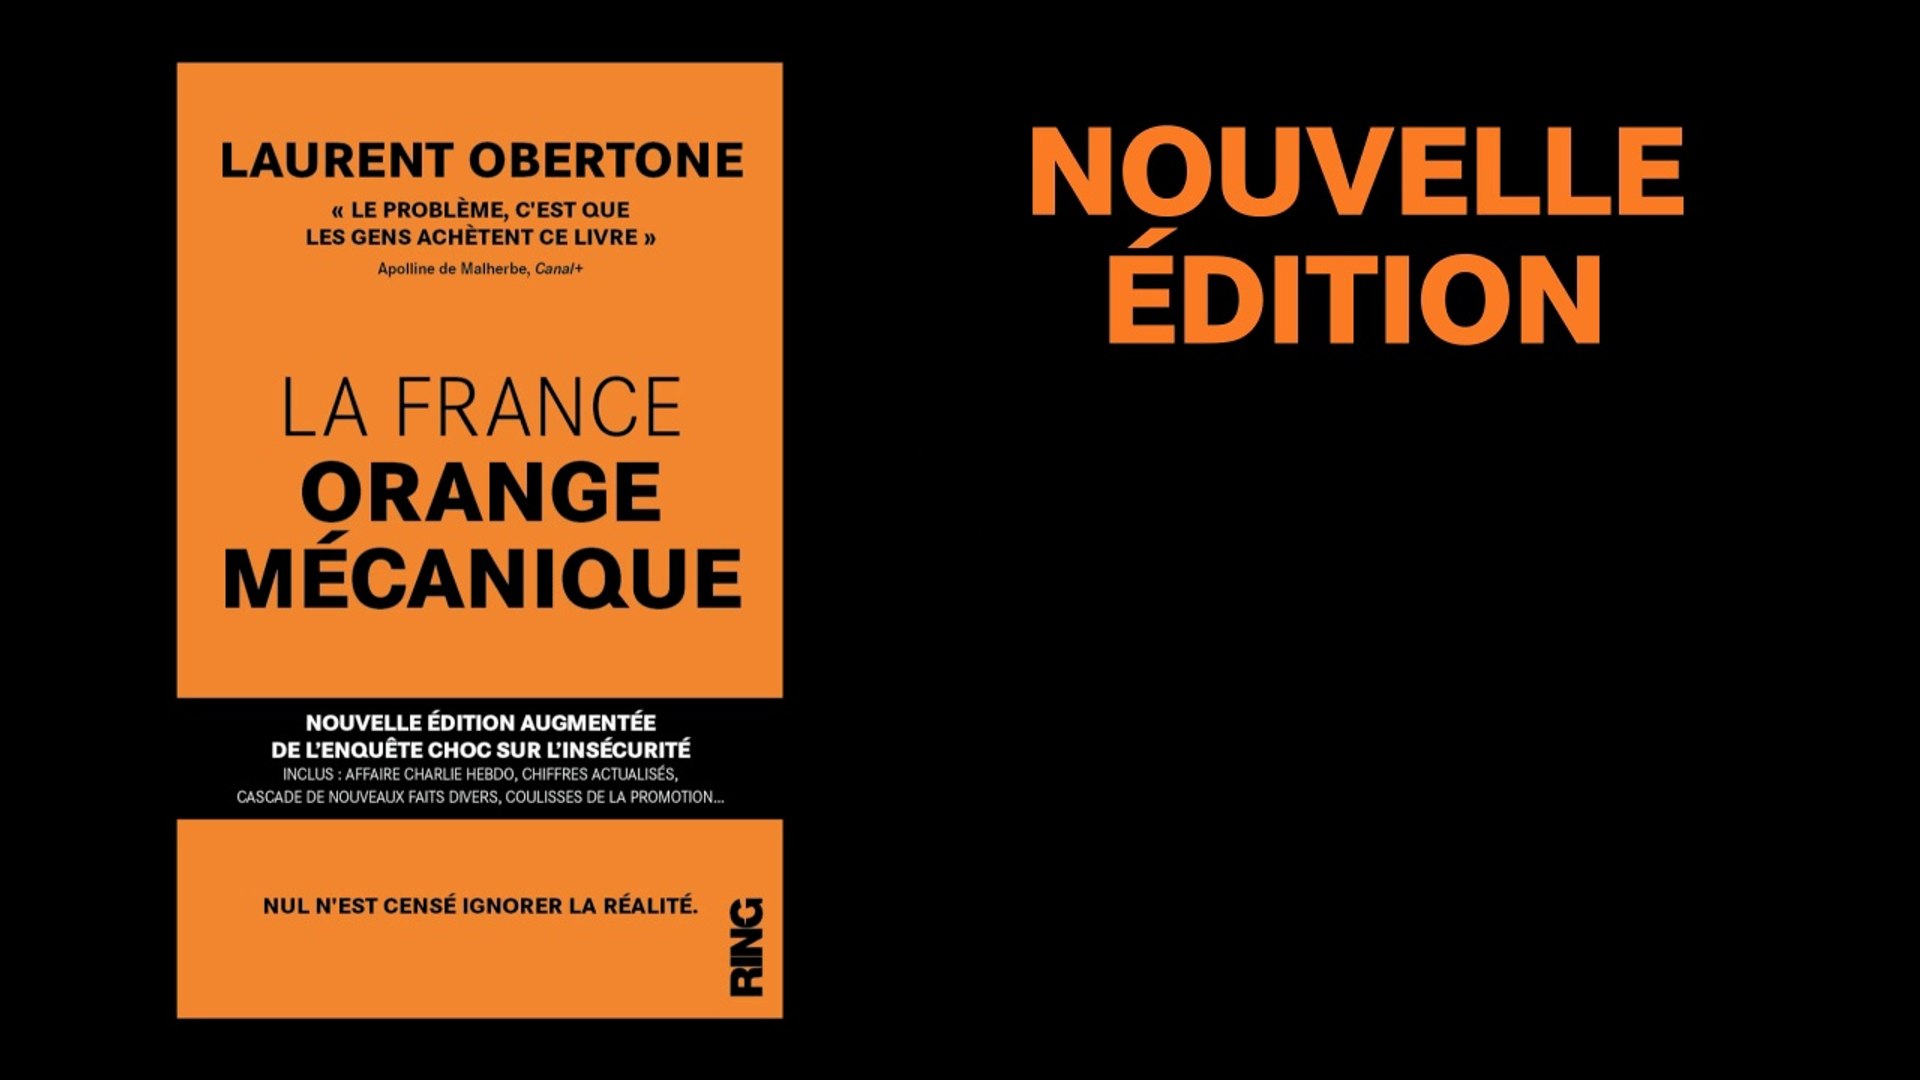 Nouvelle édition augmentée de La France Orange Mécanique - Vidéo Dailymotion